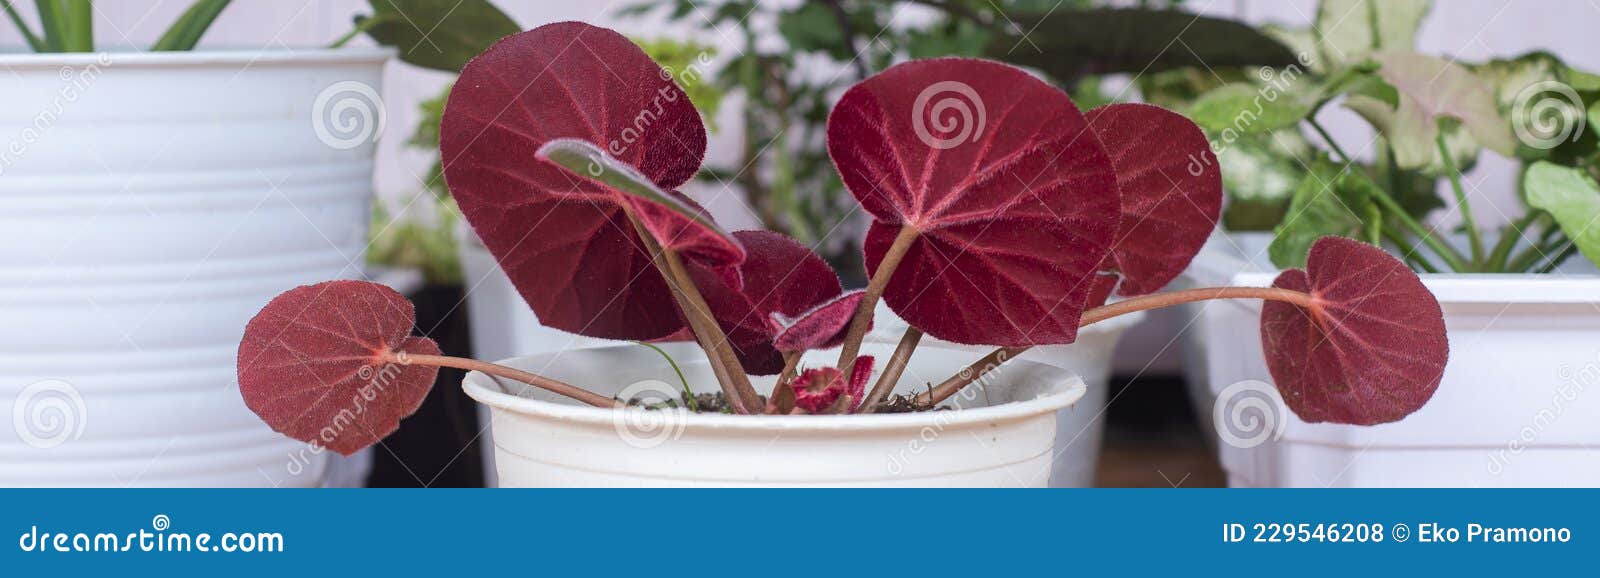 La Planta De Begonia De Hojas Rojas Tiene Una Textura De Hoja Parecida a  Una Alfombra Foto de archivo - Imagen de flora, color: 229546208